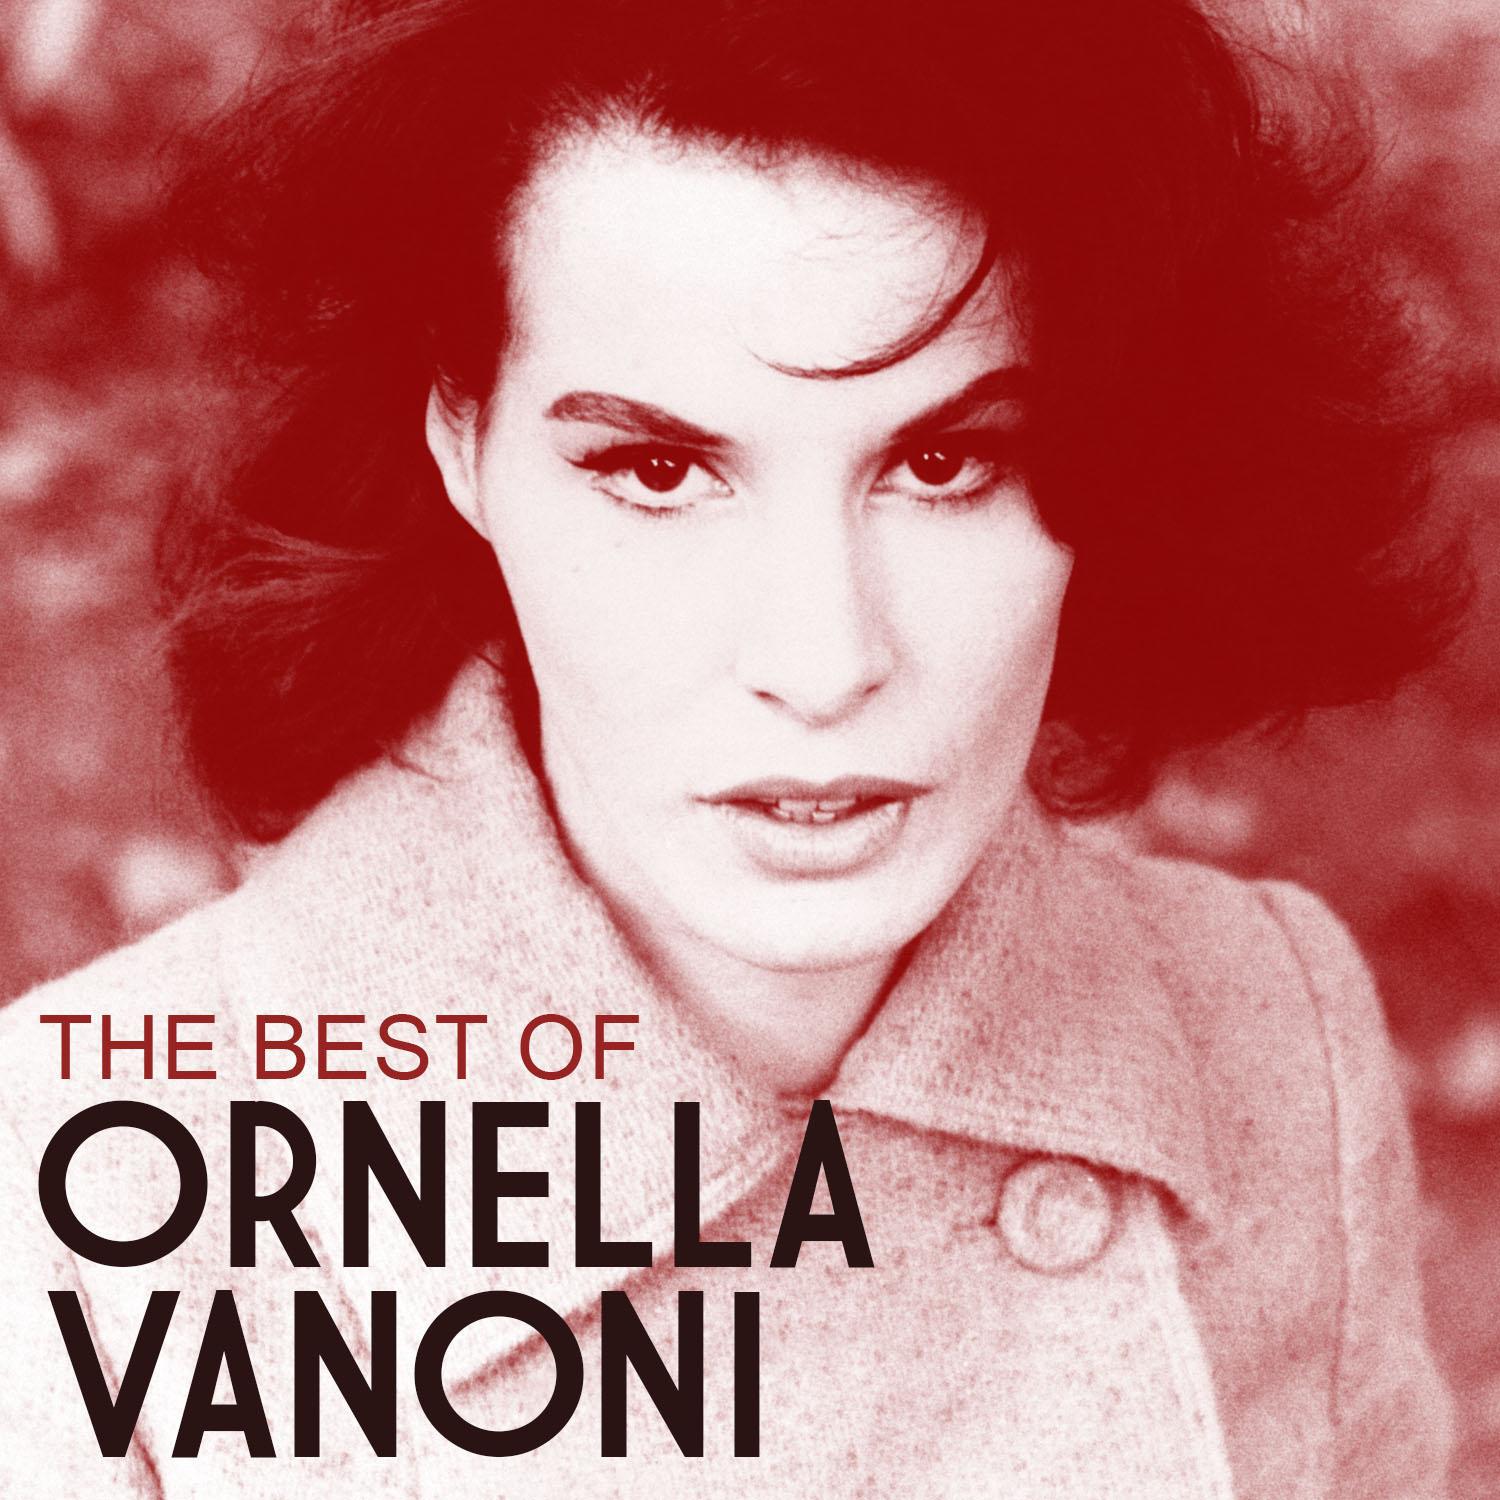 The Best of Ornella Vanoni专辑